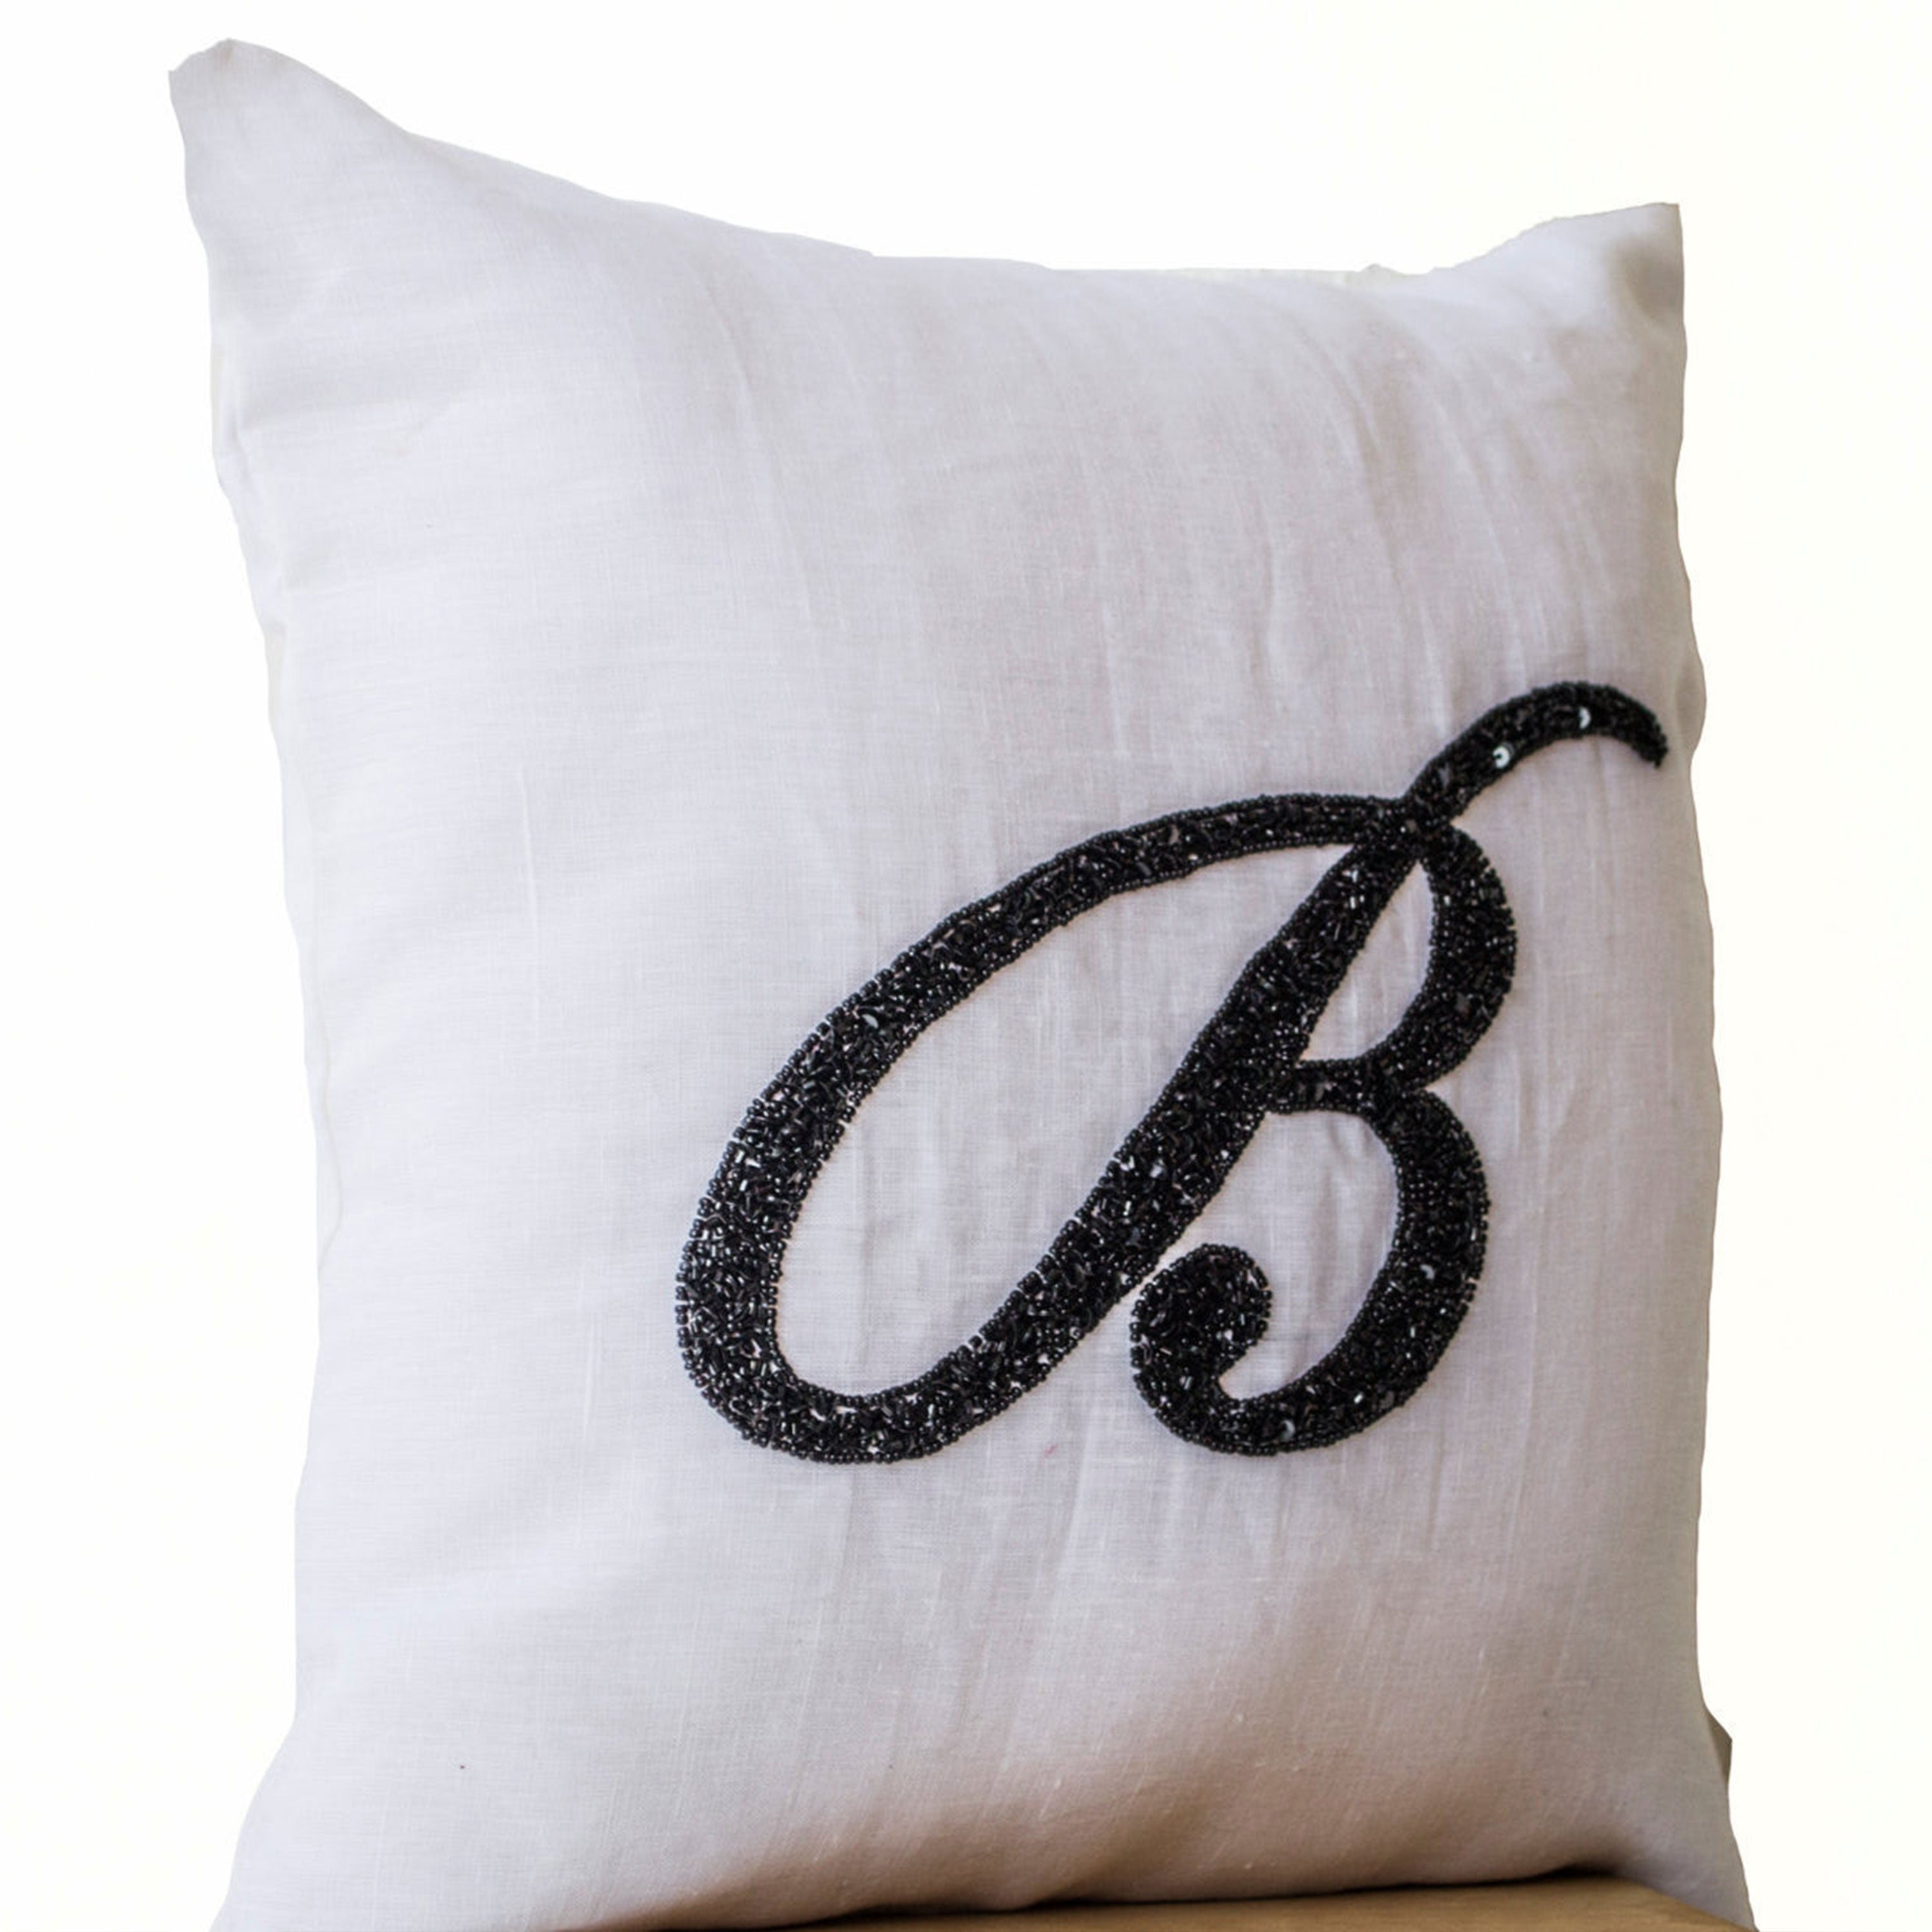 Handmade Cursive Monogram Letter Throw Pillow Cover On White Linen In Beads Sequin